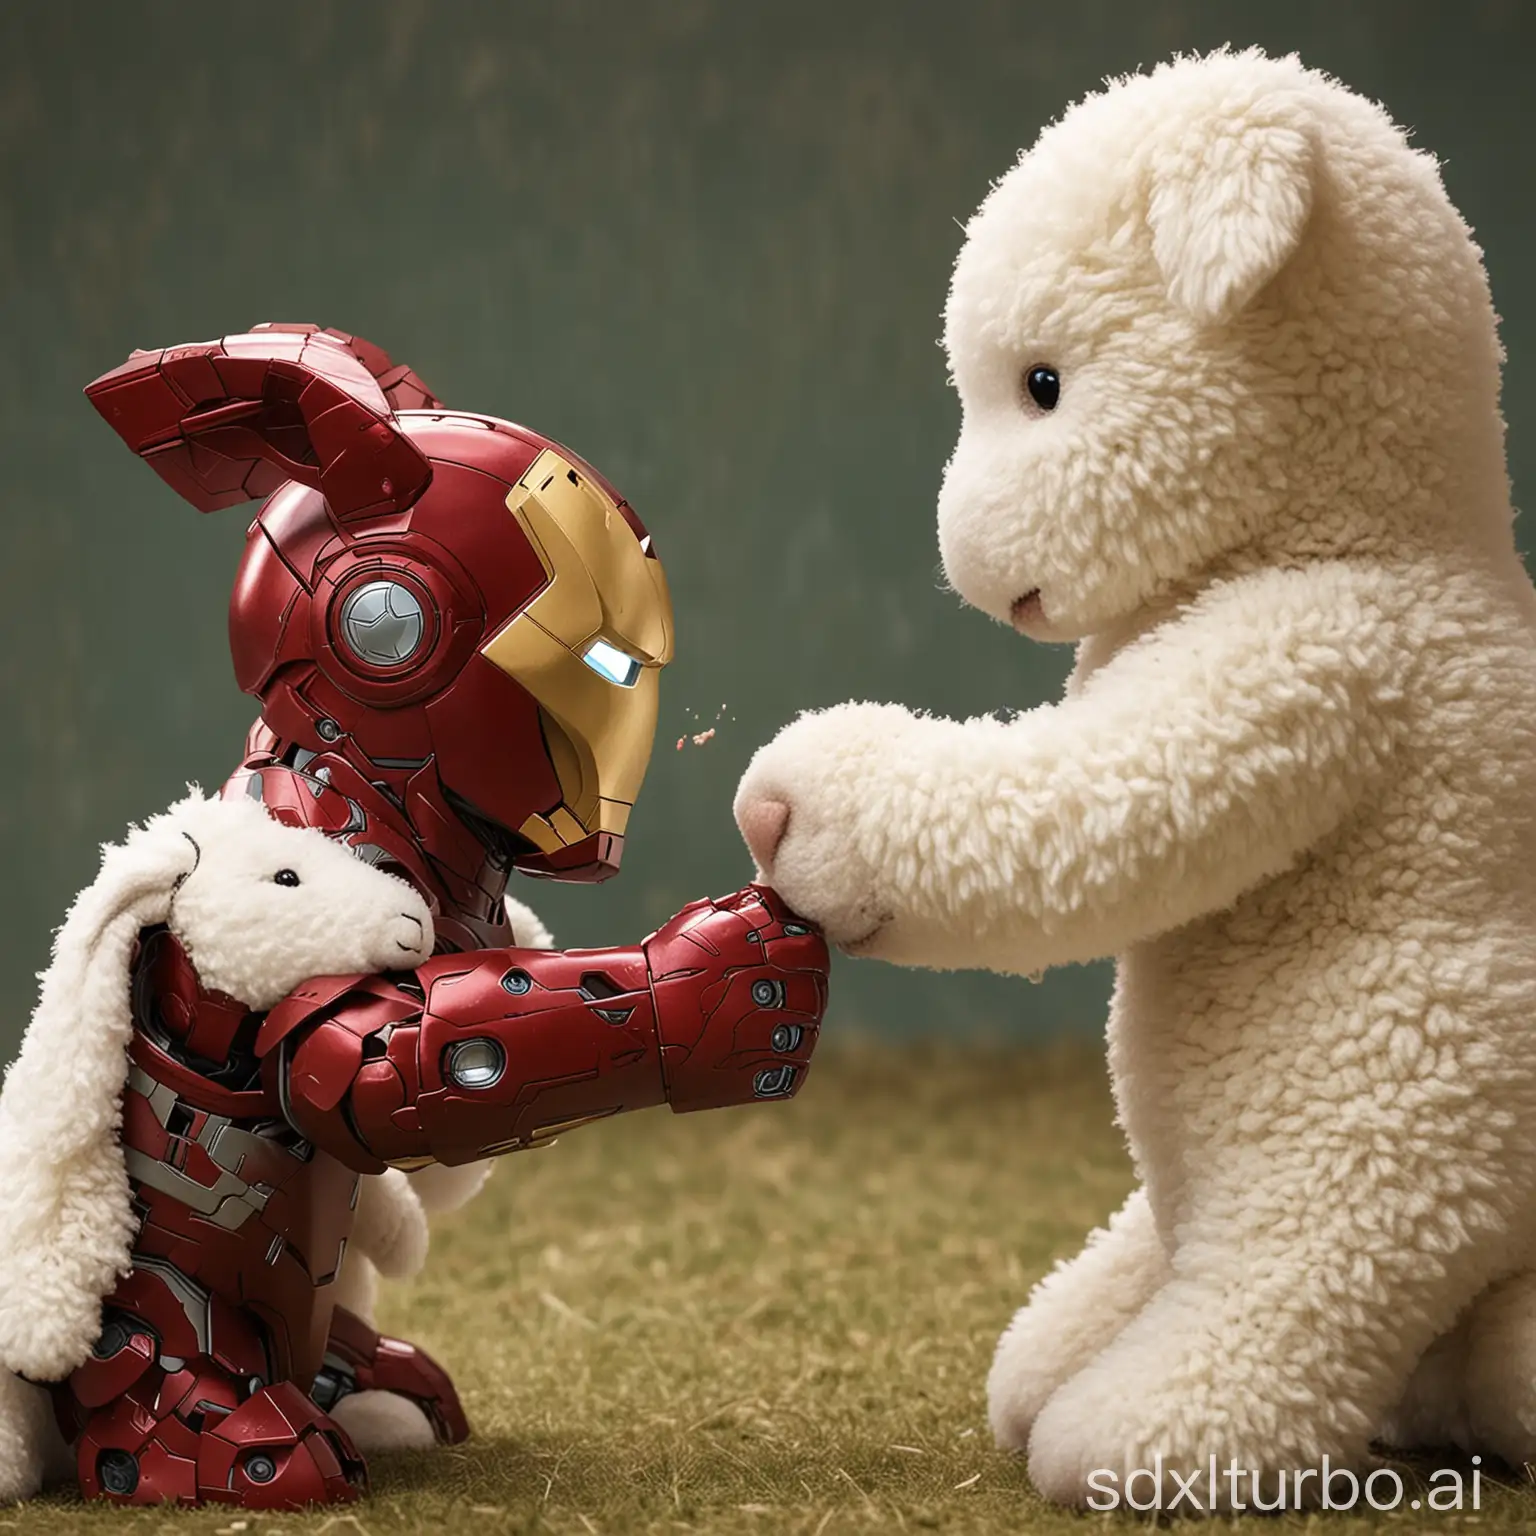 Iron Man punching on Lamby's face